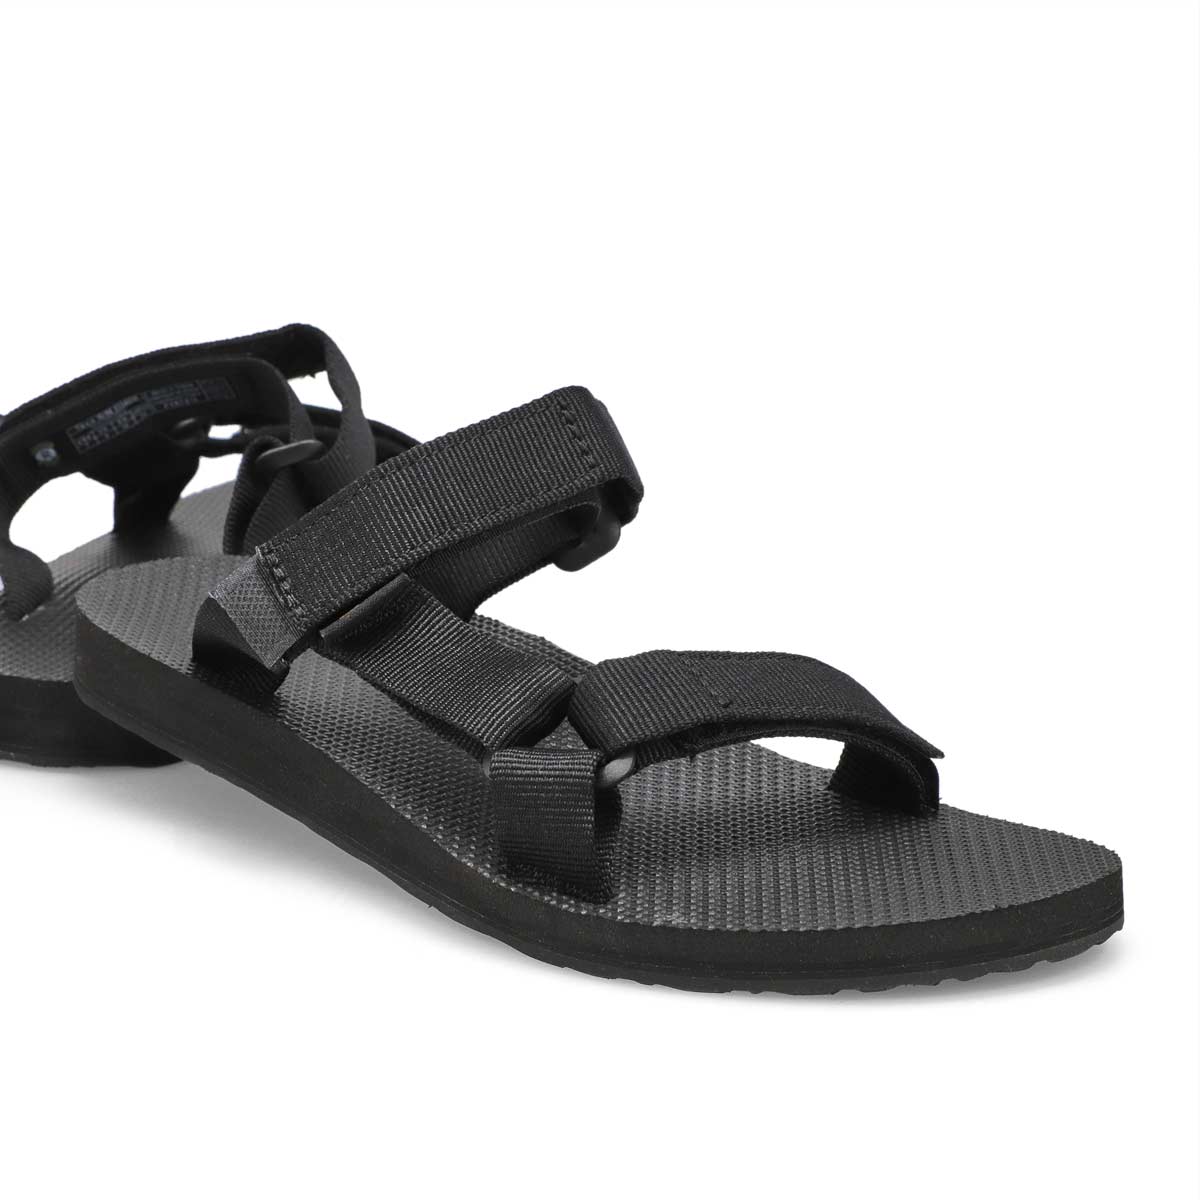 Women's Universal Slide Sandal - Black